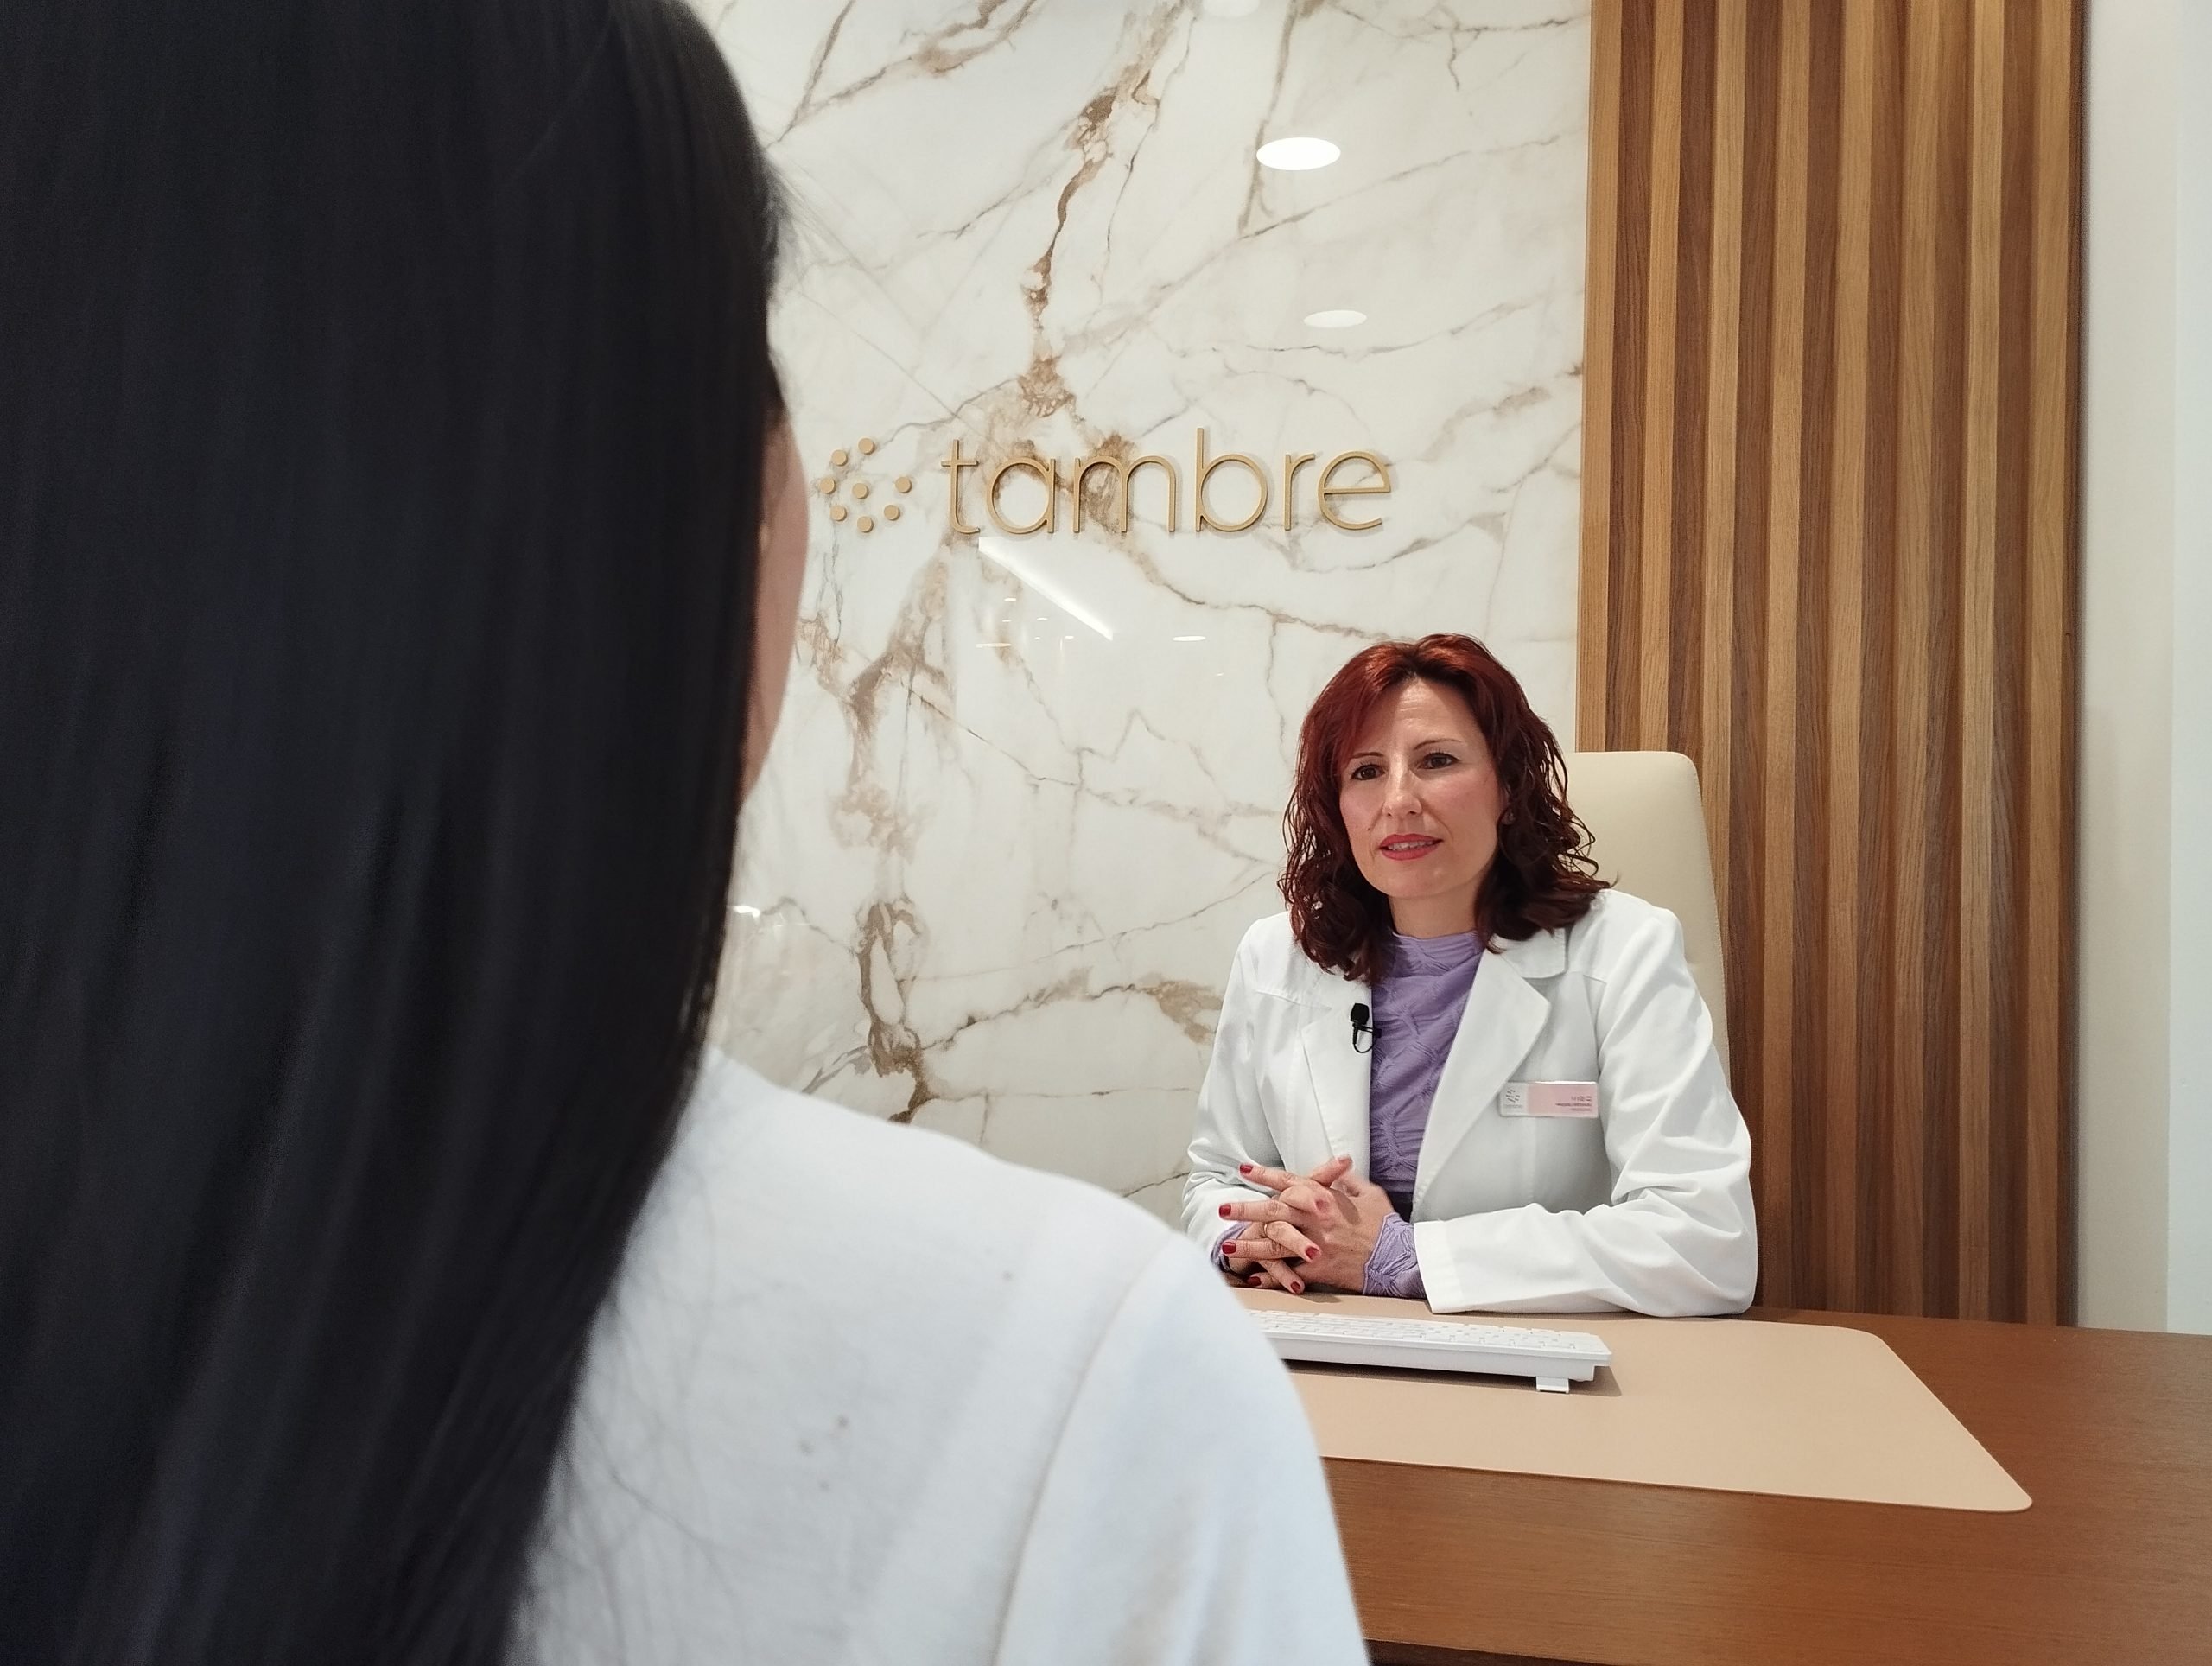 Tambre’s fertility psychologist attends to a patient